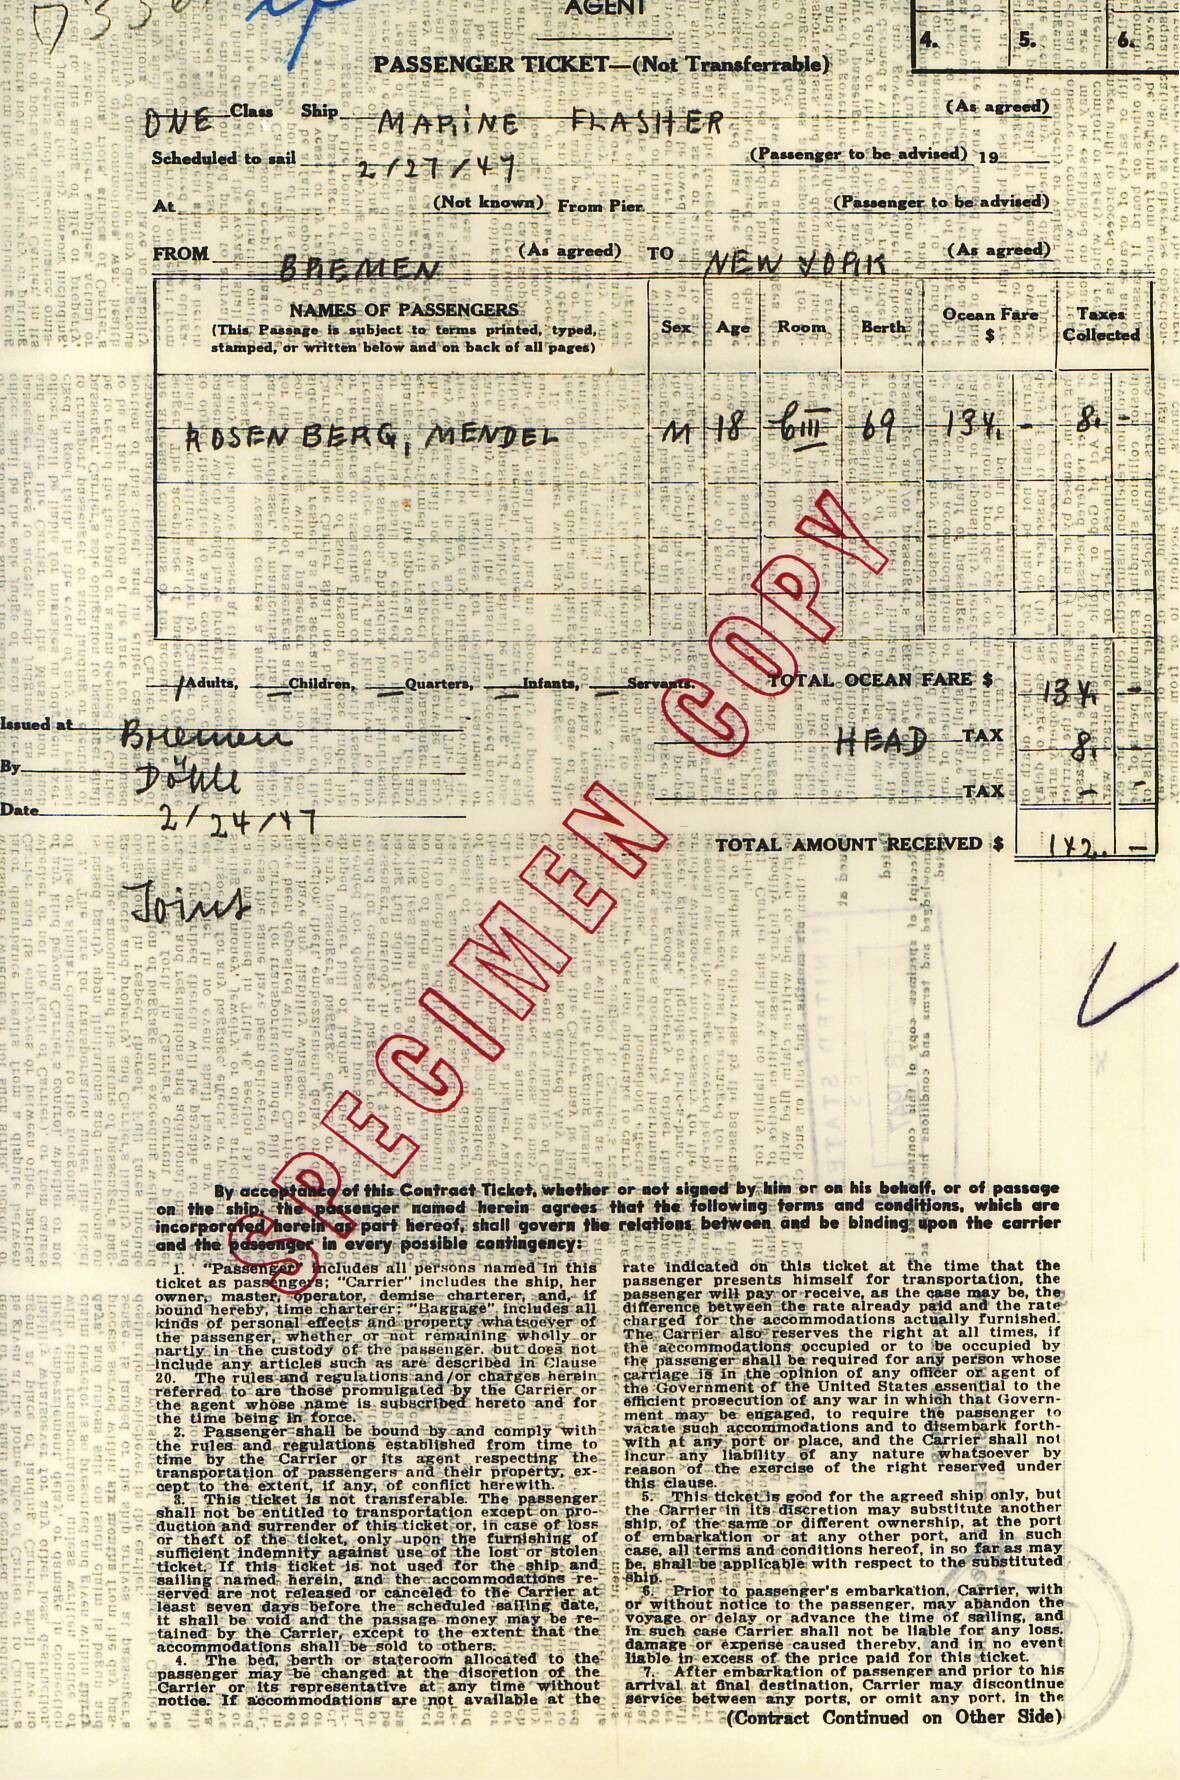 Passenger Ticket from Bremem 1947